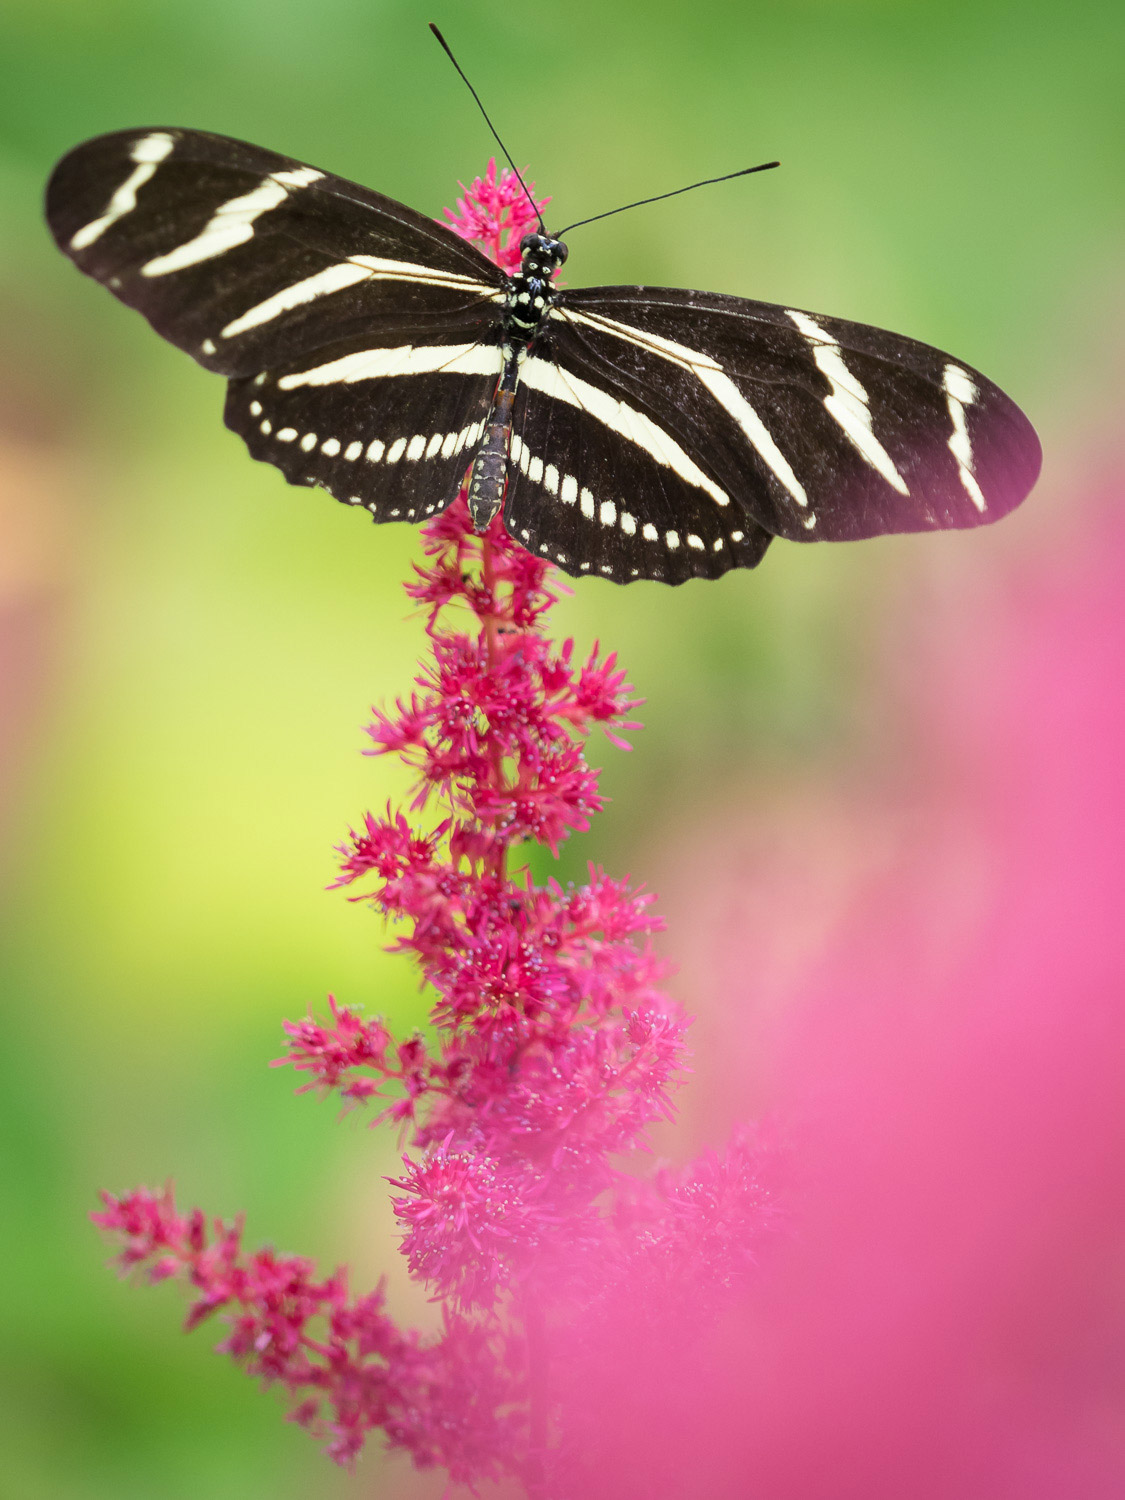 一只黑白相间的蝴蝶停在粉红色的花朵上